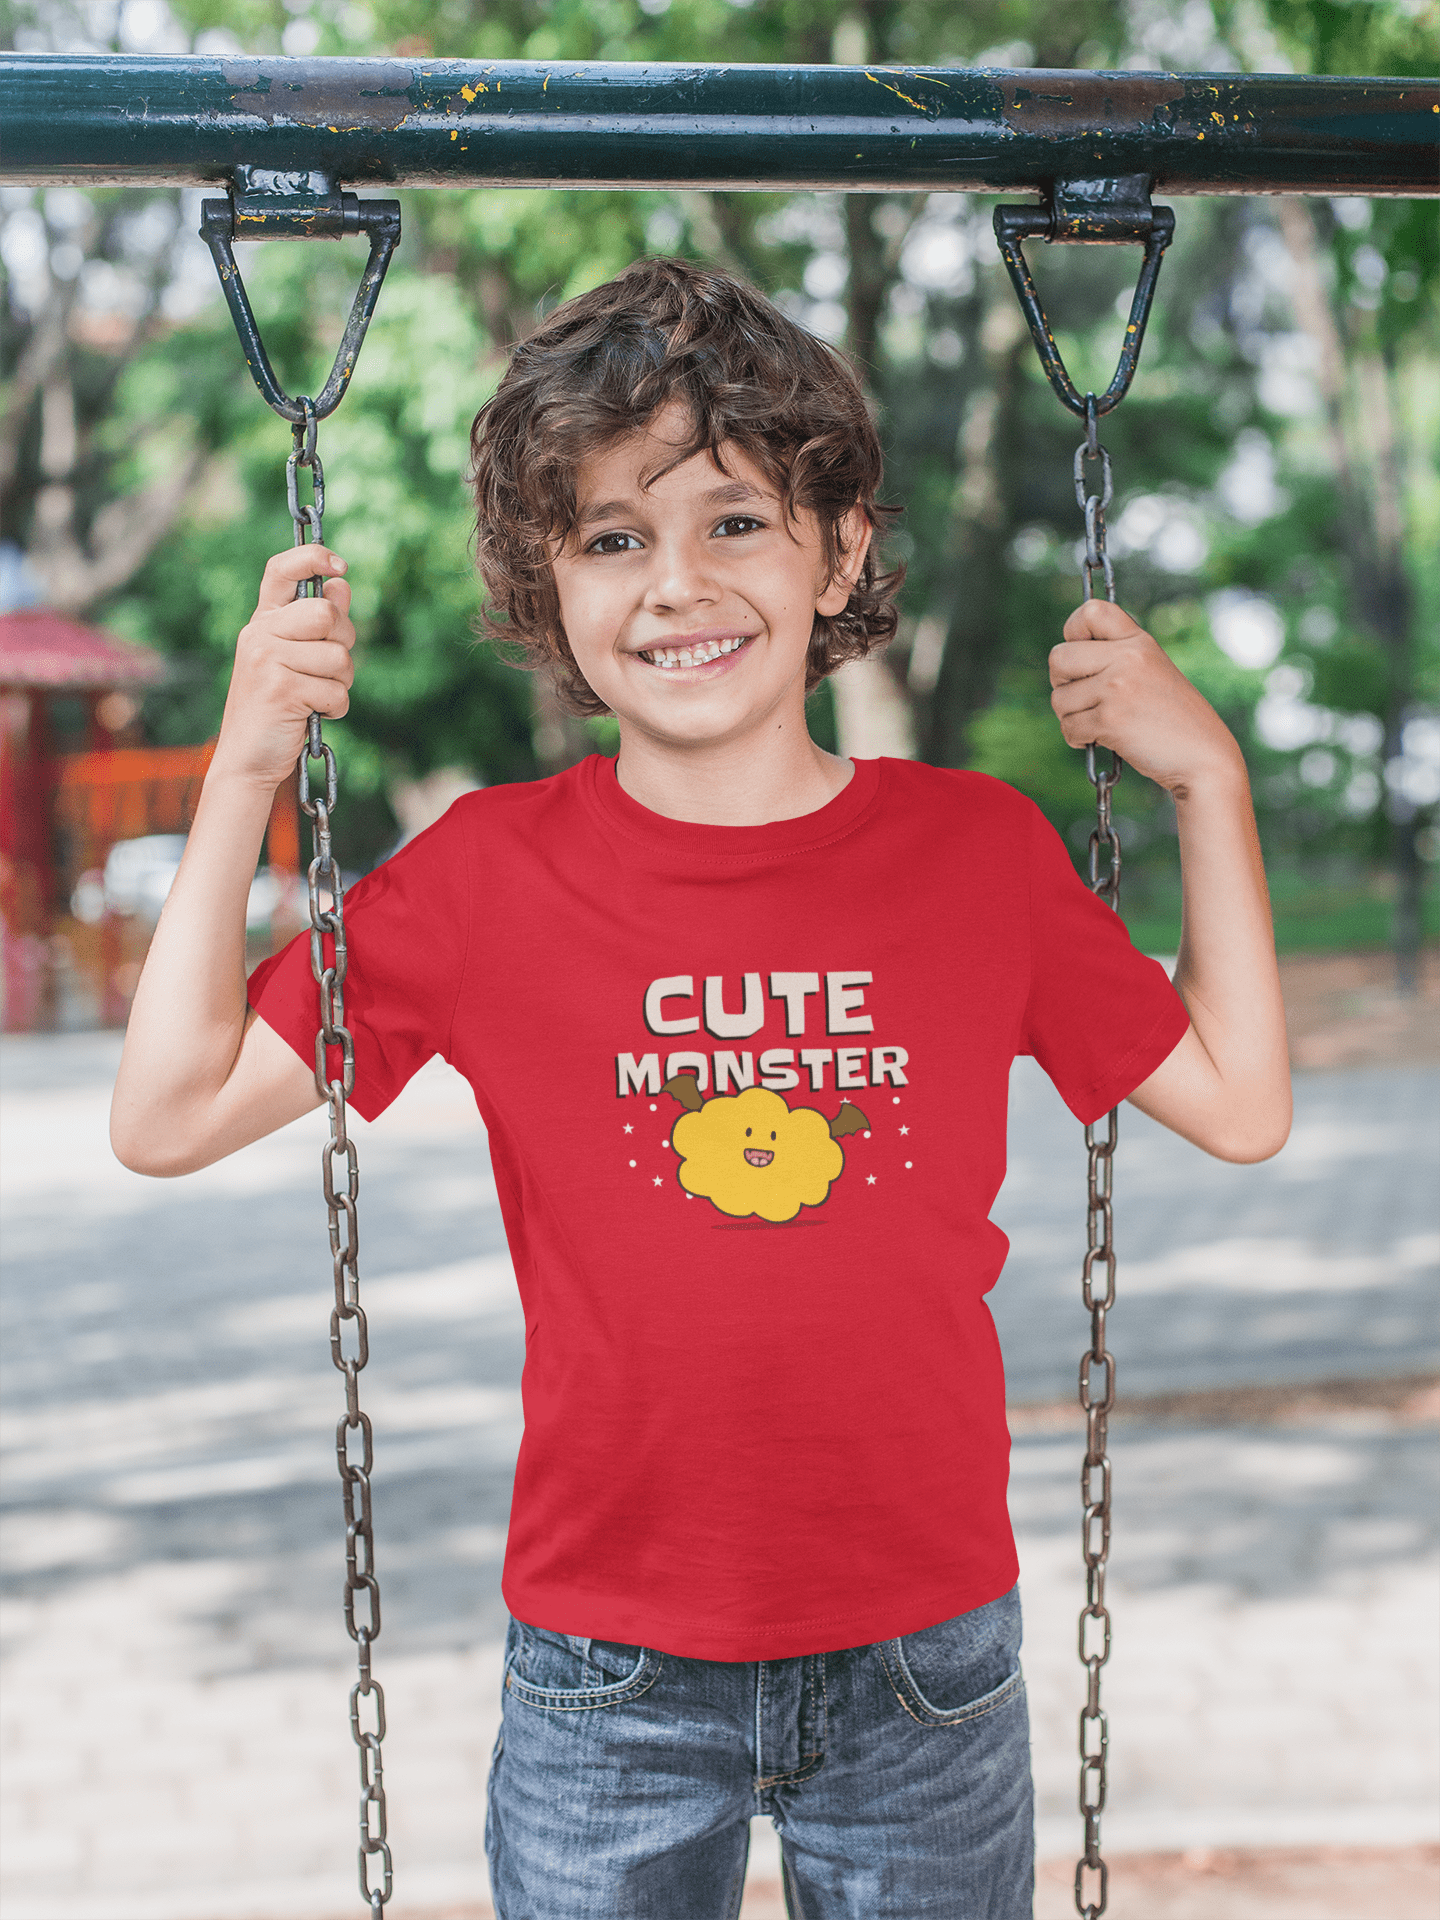 "CUTE MONSTER" KIDS HALF-SLEEVE T-SHIRT RED